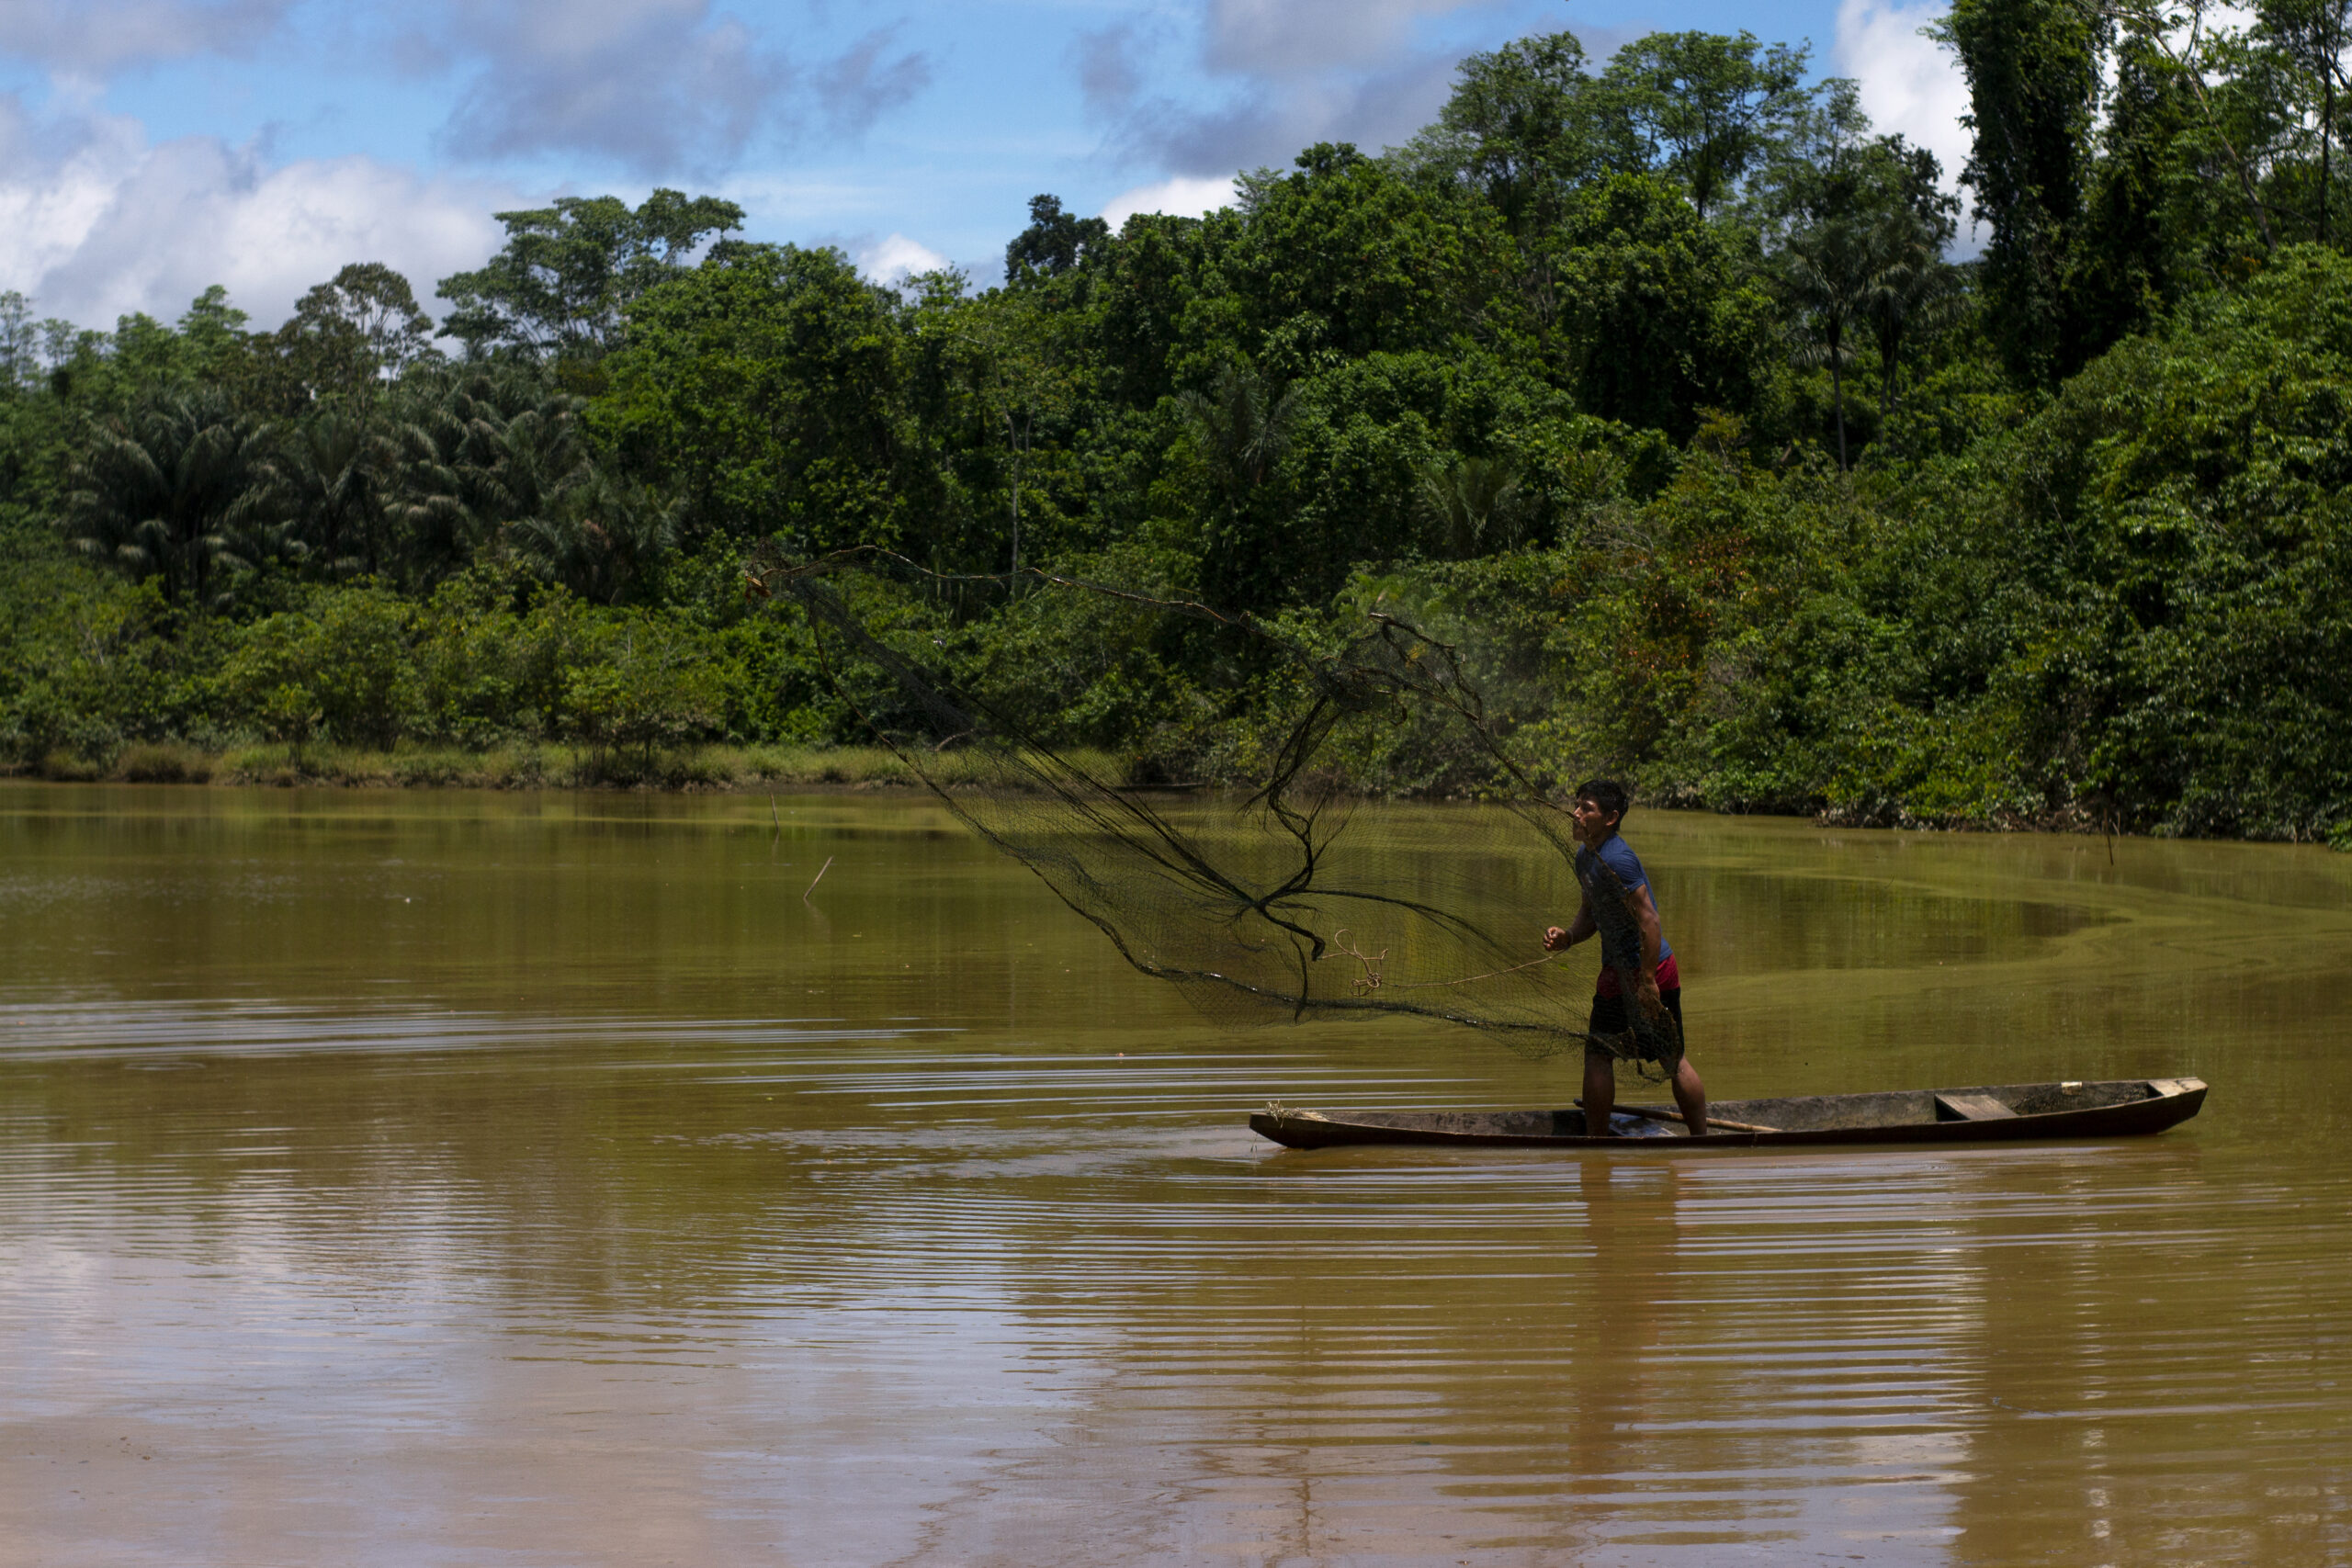 Jovens indígenas do povo Kapanawa do Peru pescando no rio com canoa e redes tradicionais. 
Ganhadores do Concurso de Fotografia “Soluções Inovadoras dos Povos Indígenas”
Nome da foto: Pescador Kapanawa. Autor: Patrick Murayar